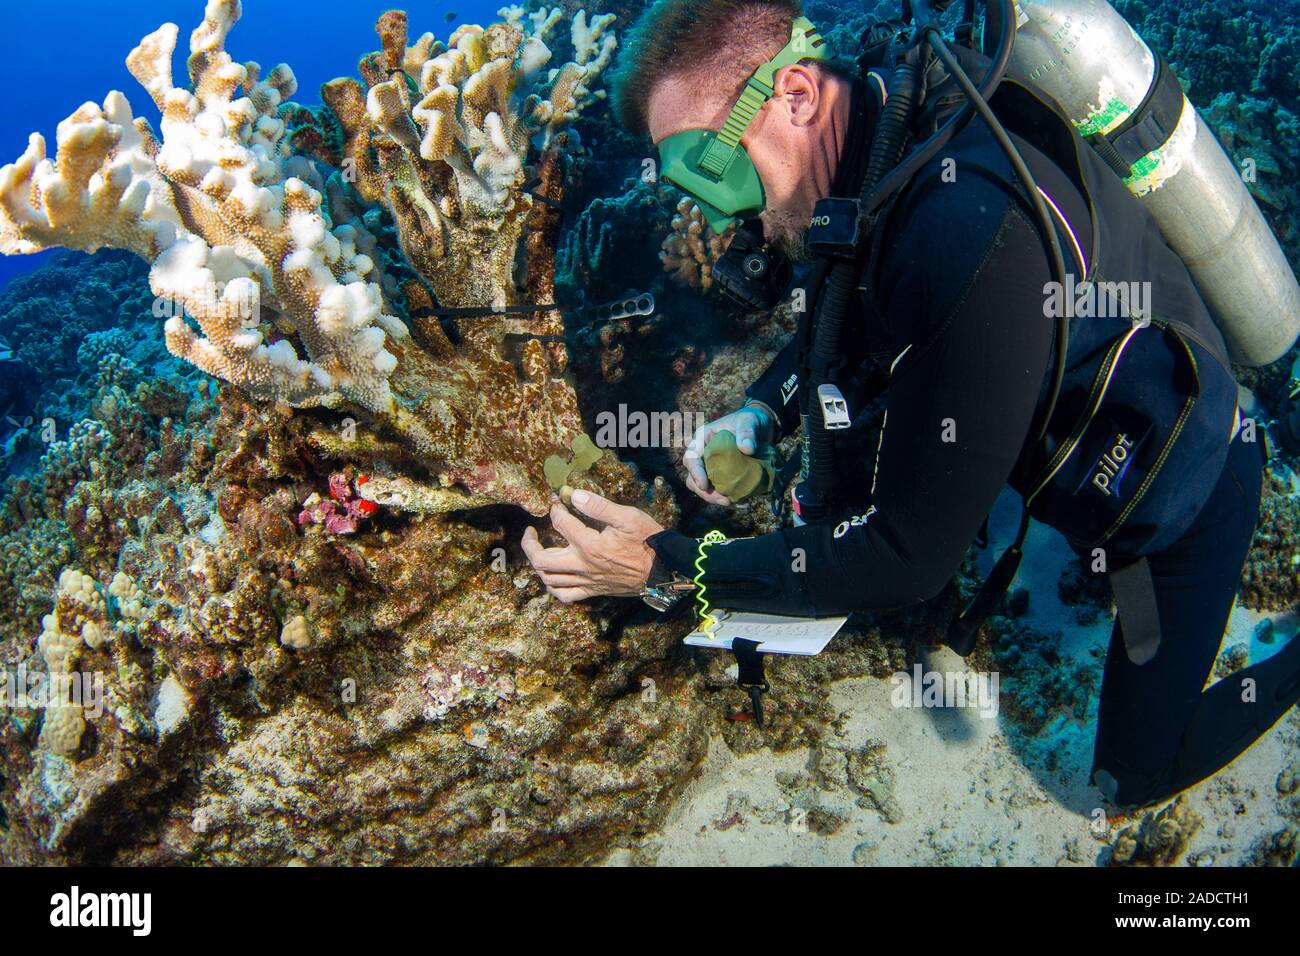 Un research diver dal MOC Istituto marino colle corallo rotto di nuovo insieme a Molokini riserva marina dell'isola di Maui, Hawaii. Questa immersione Foto Stock